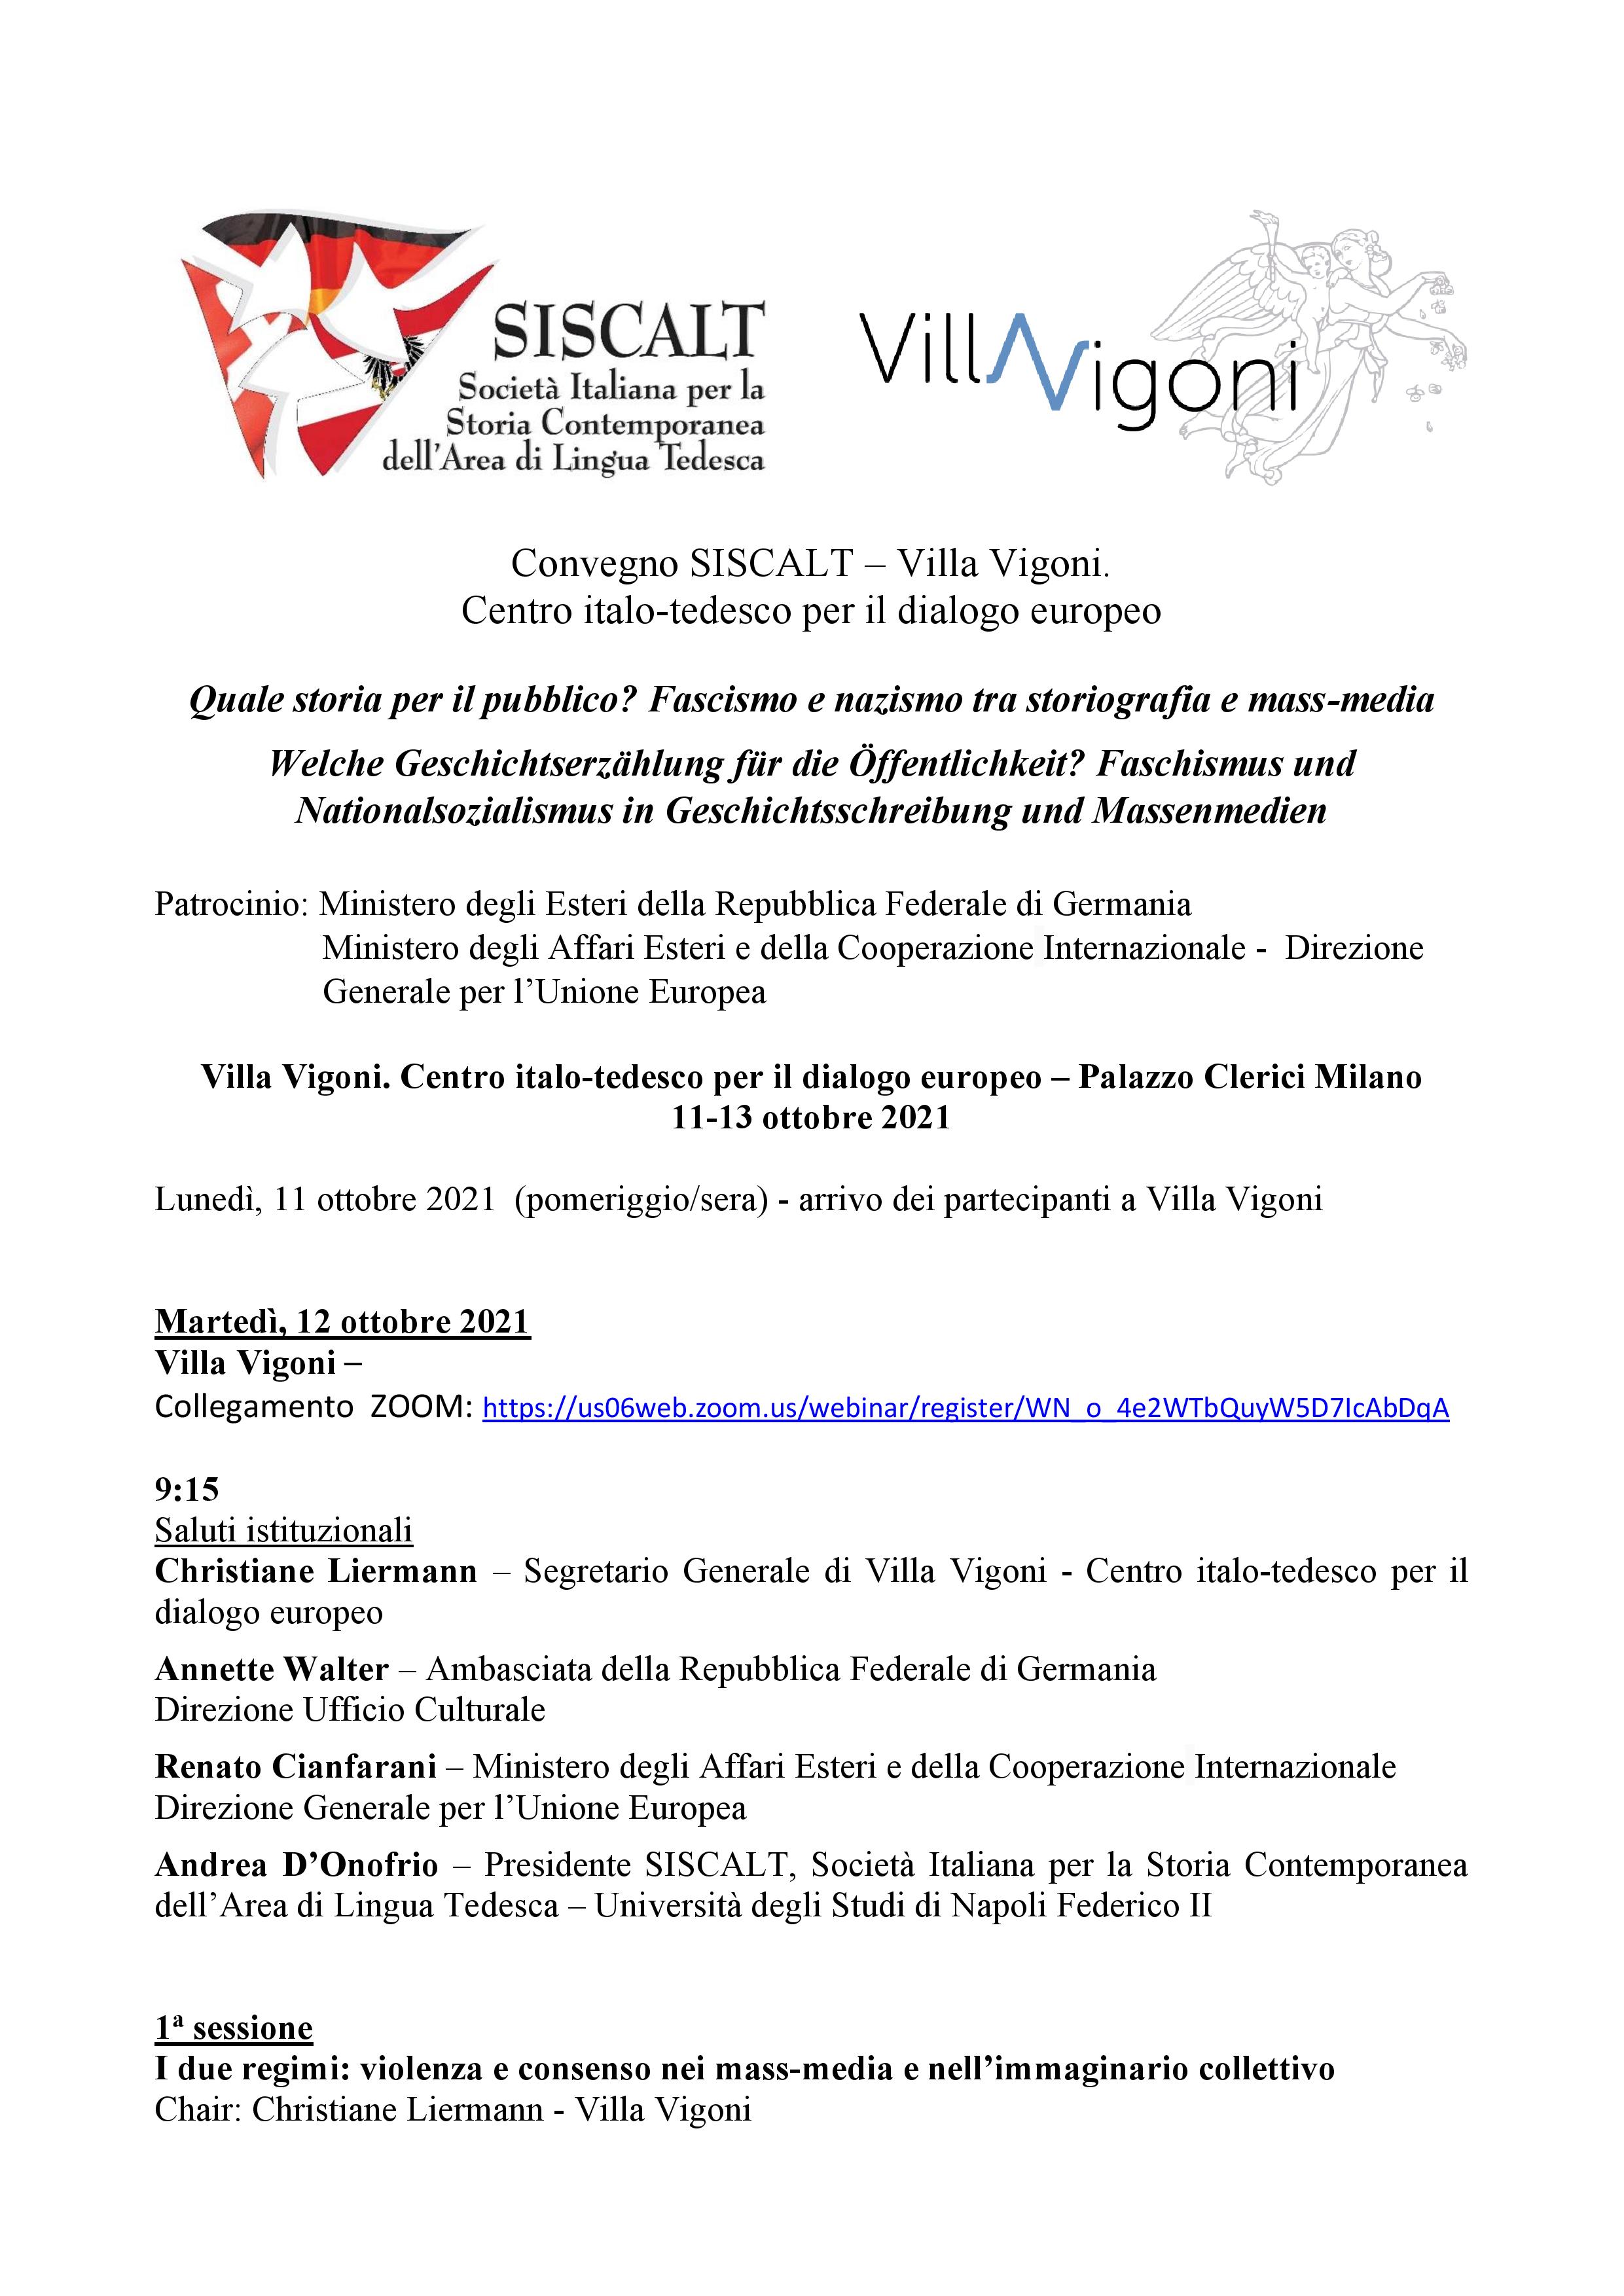 Programma def Convegno SISCALT- Villa.Vigoni 11-13 ottobre 2021 corretto-page-001